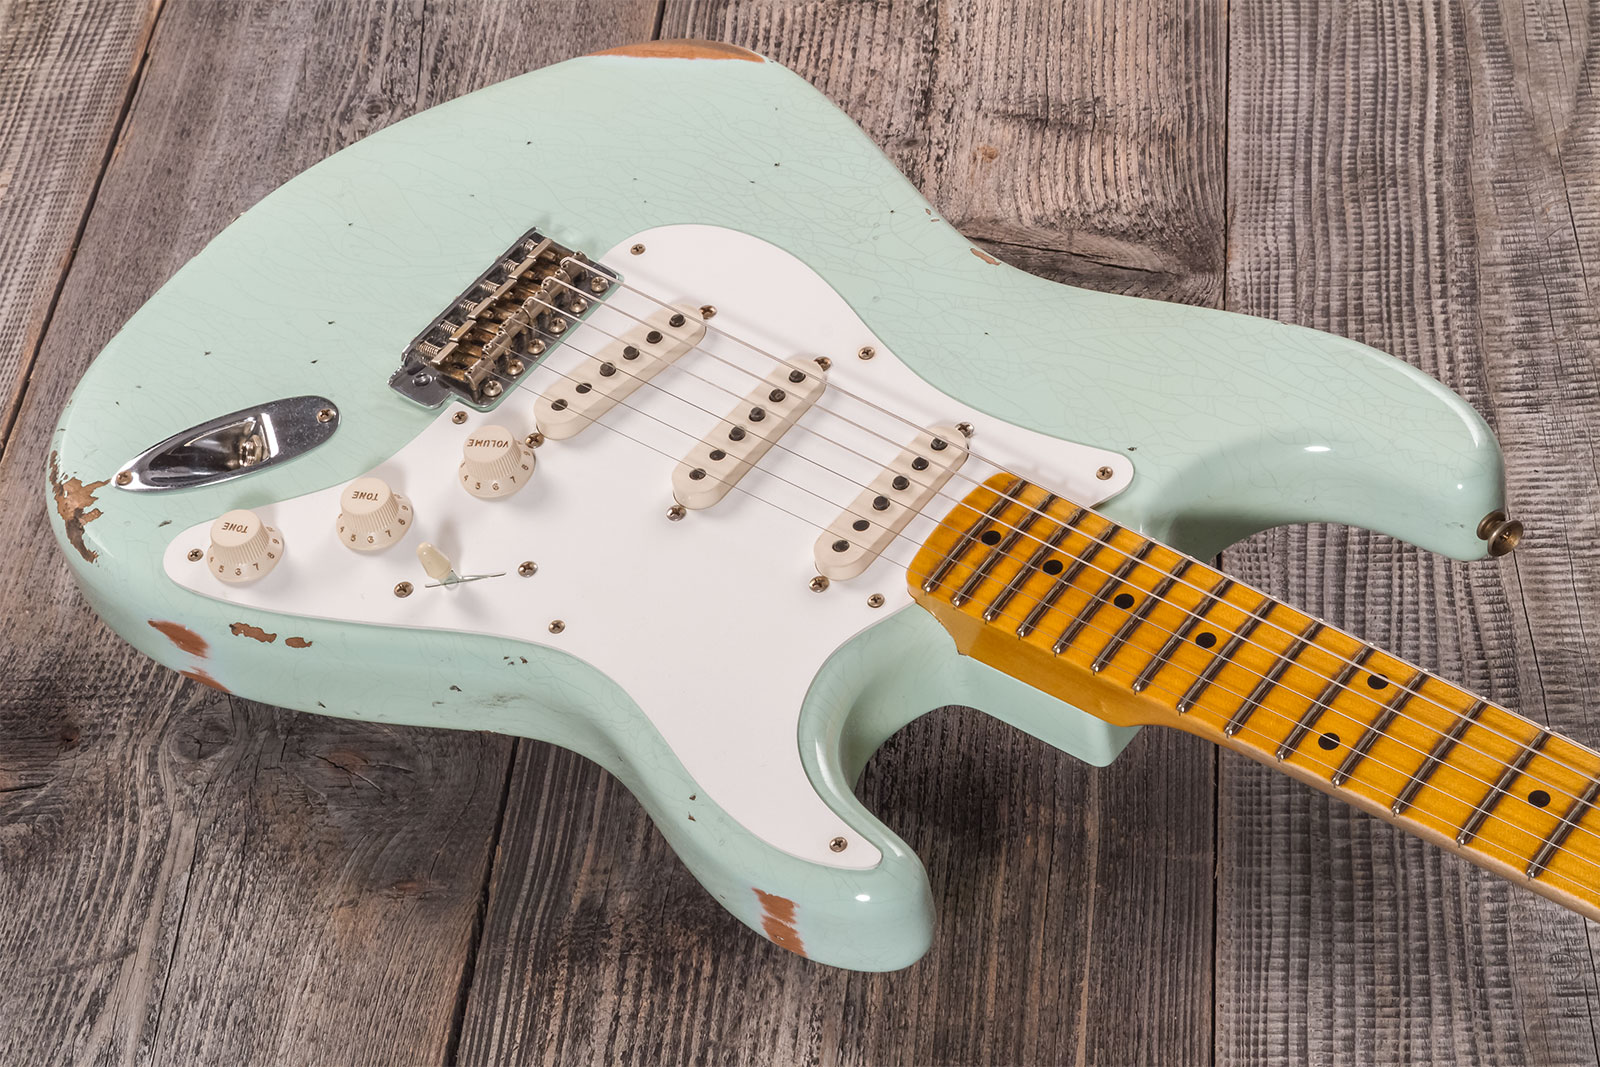 Fender Custom Shop Strat 1958 3s Trem Mn #cz572338 - Relic Aged Surf Green - Str shape electric guitar - Variation 2